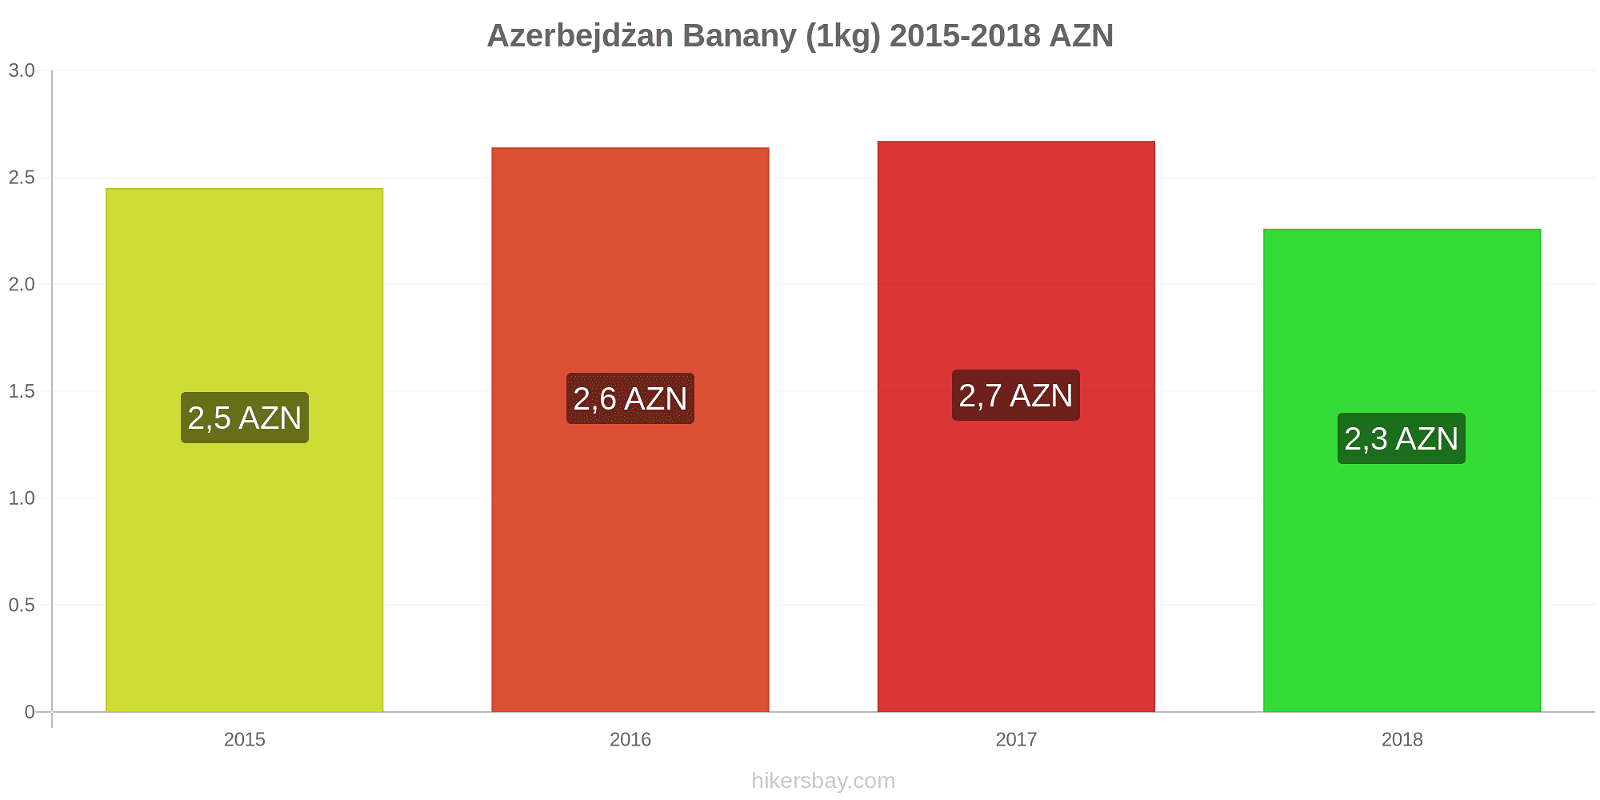 Azerbejdżan zmiany cen Banany (1kg) hikersbay.com